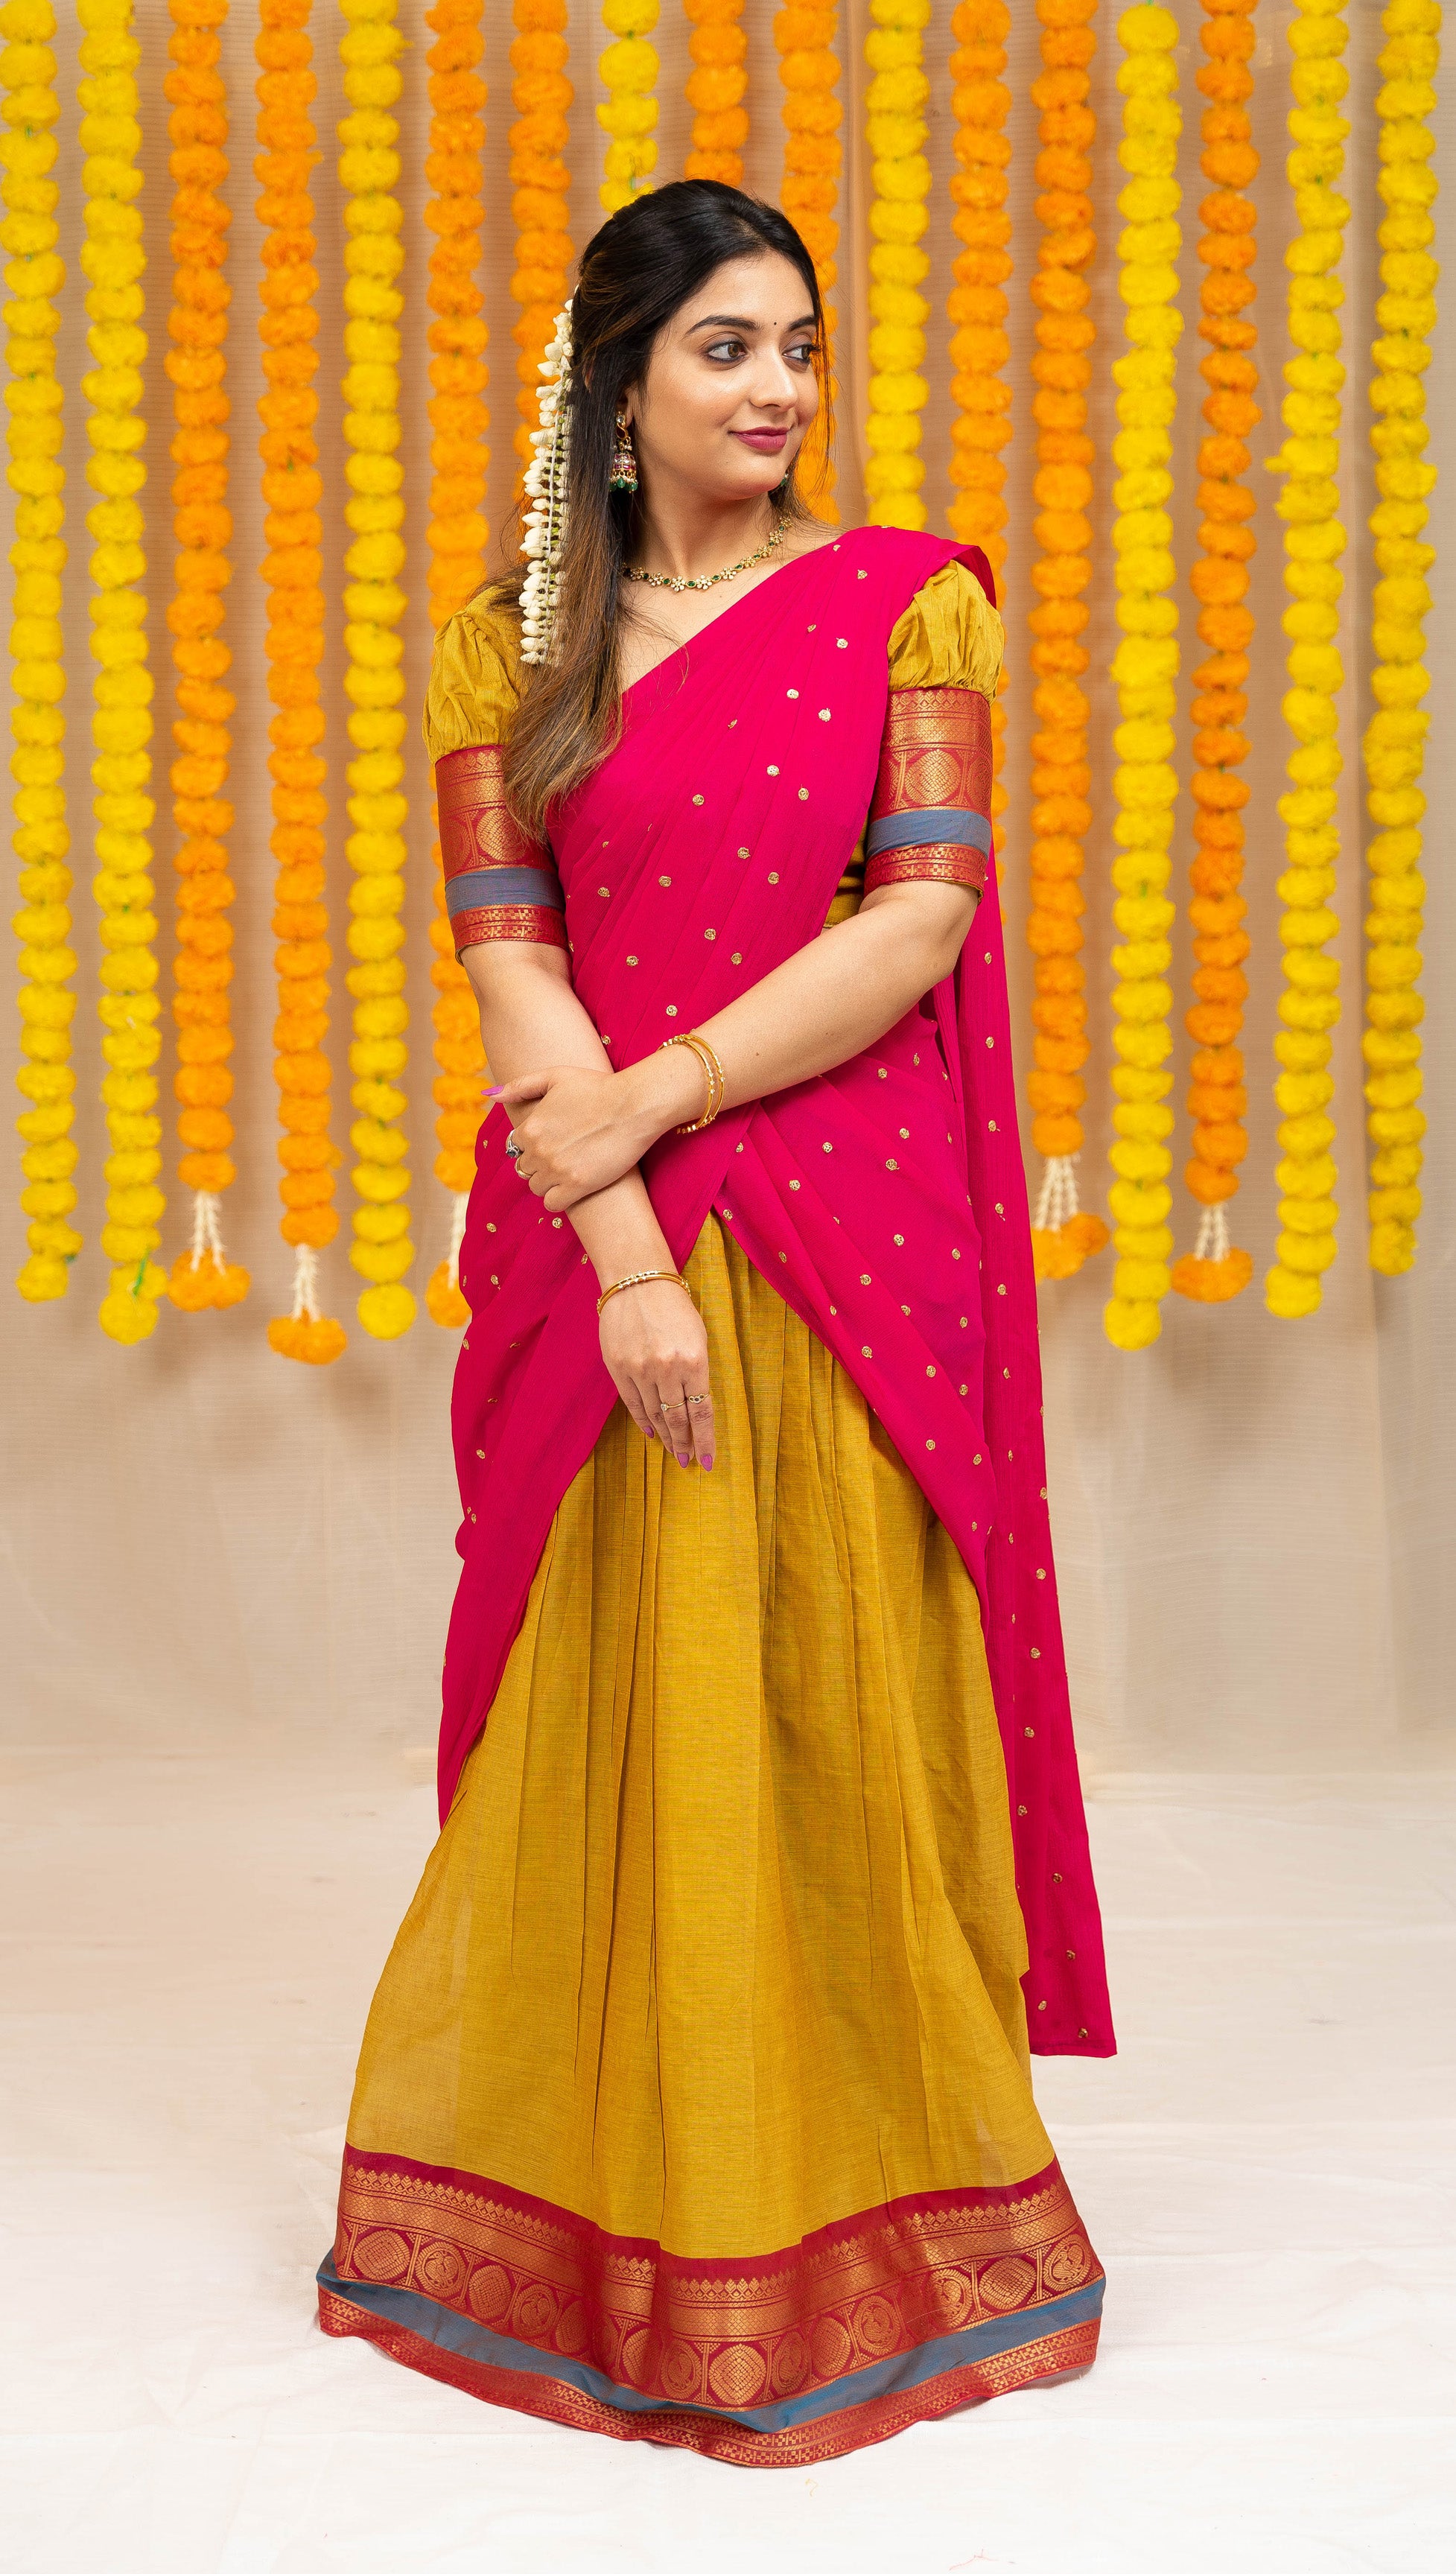 Maanasa - Yellow Skirt with pink Half saree